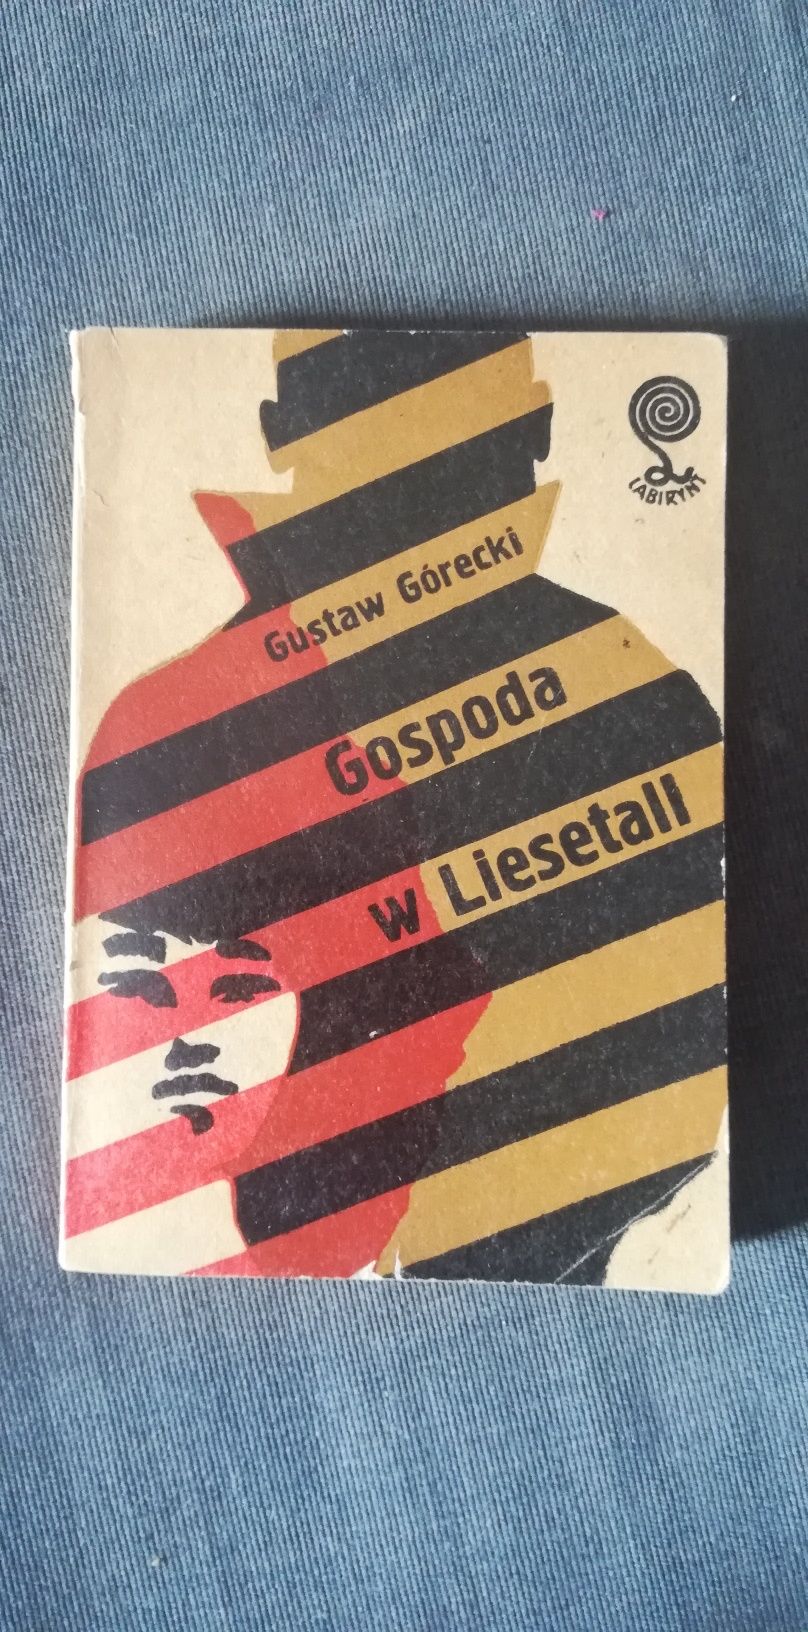 Gospoda w Liesetall-Gustaw Górecki